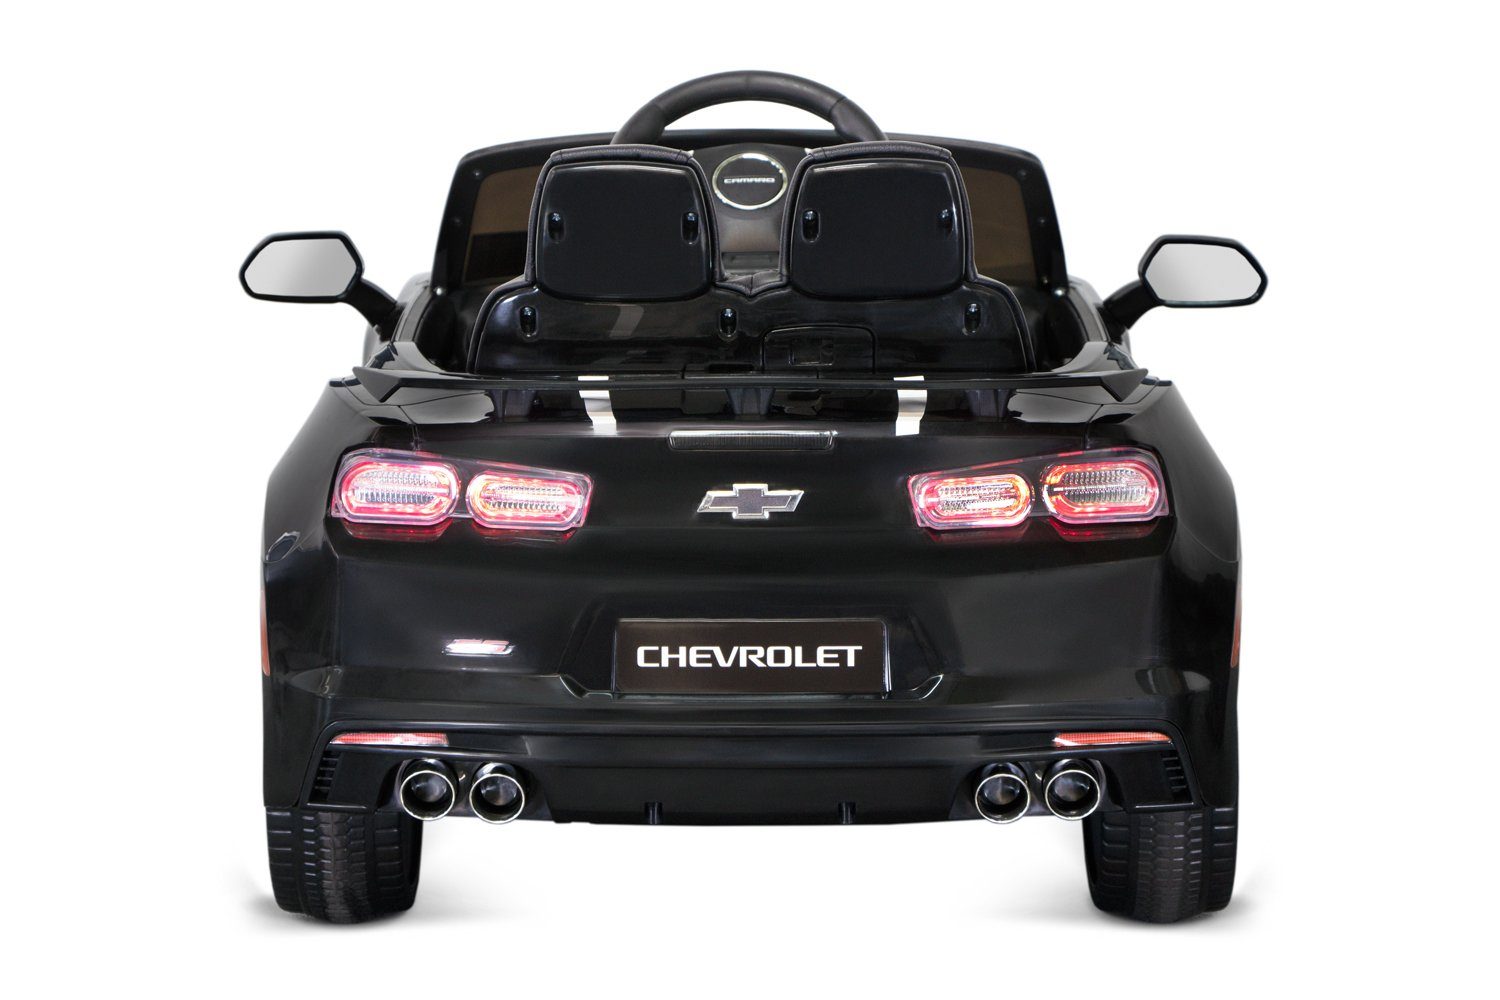 Camaro Chevrolet Weiss 2x Elektro 35W Kidix Kinderauto Lizenz Kinderfahrzeug 2SS Elektro-Kinderauto